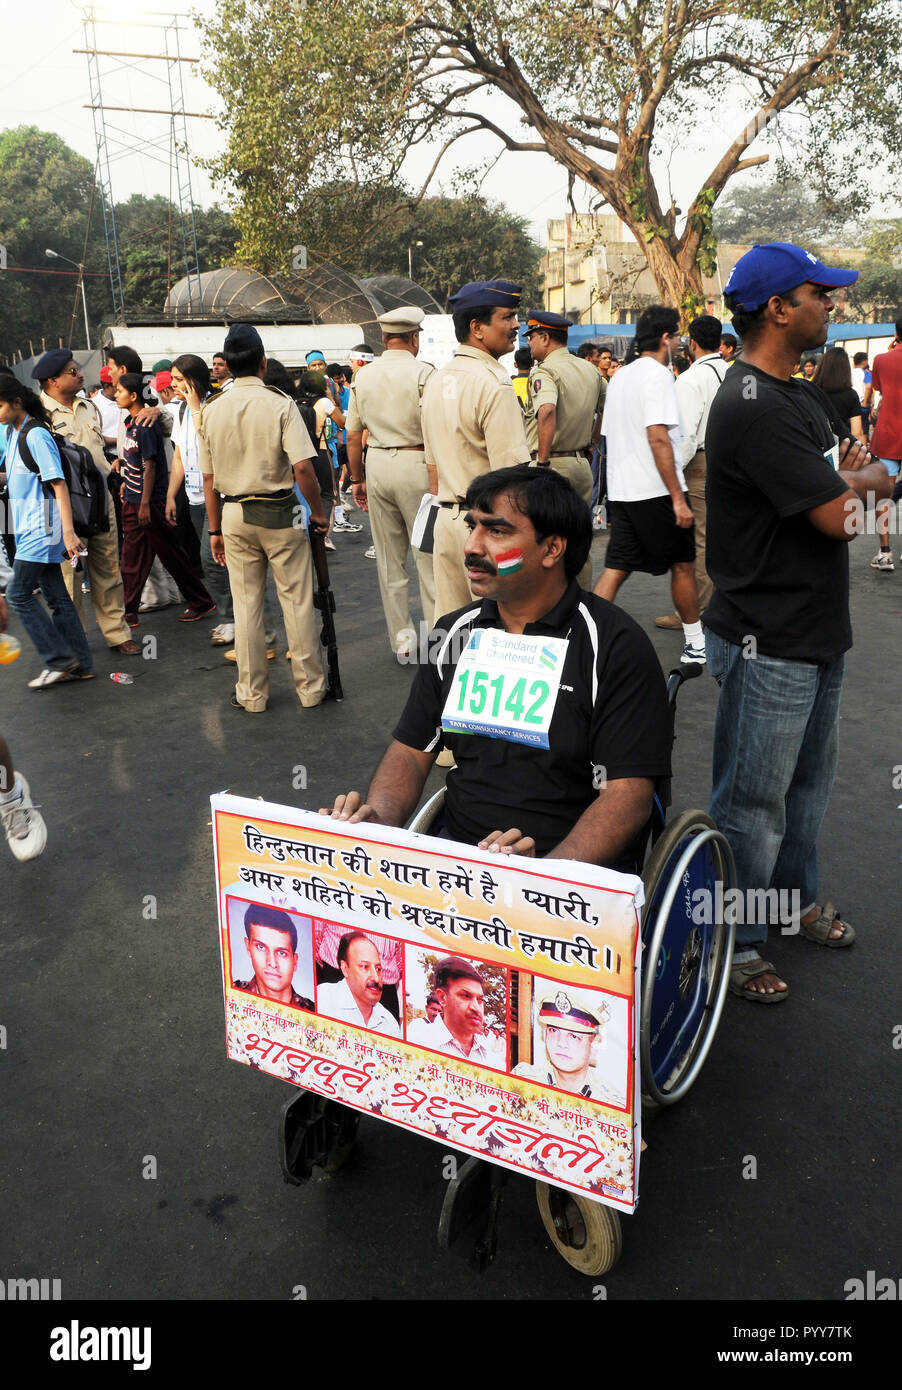 Mobilité fauteuil roulant participant à la démonstration de Marathon, Mumbai, Maharashtra, Inde, Asie Banque D'Images